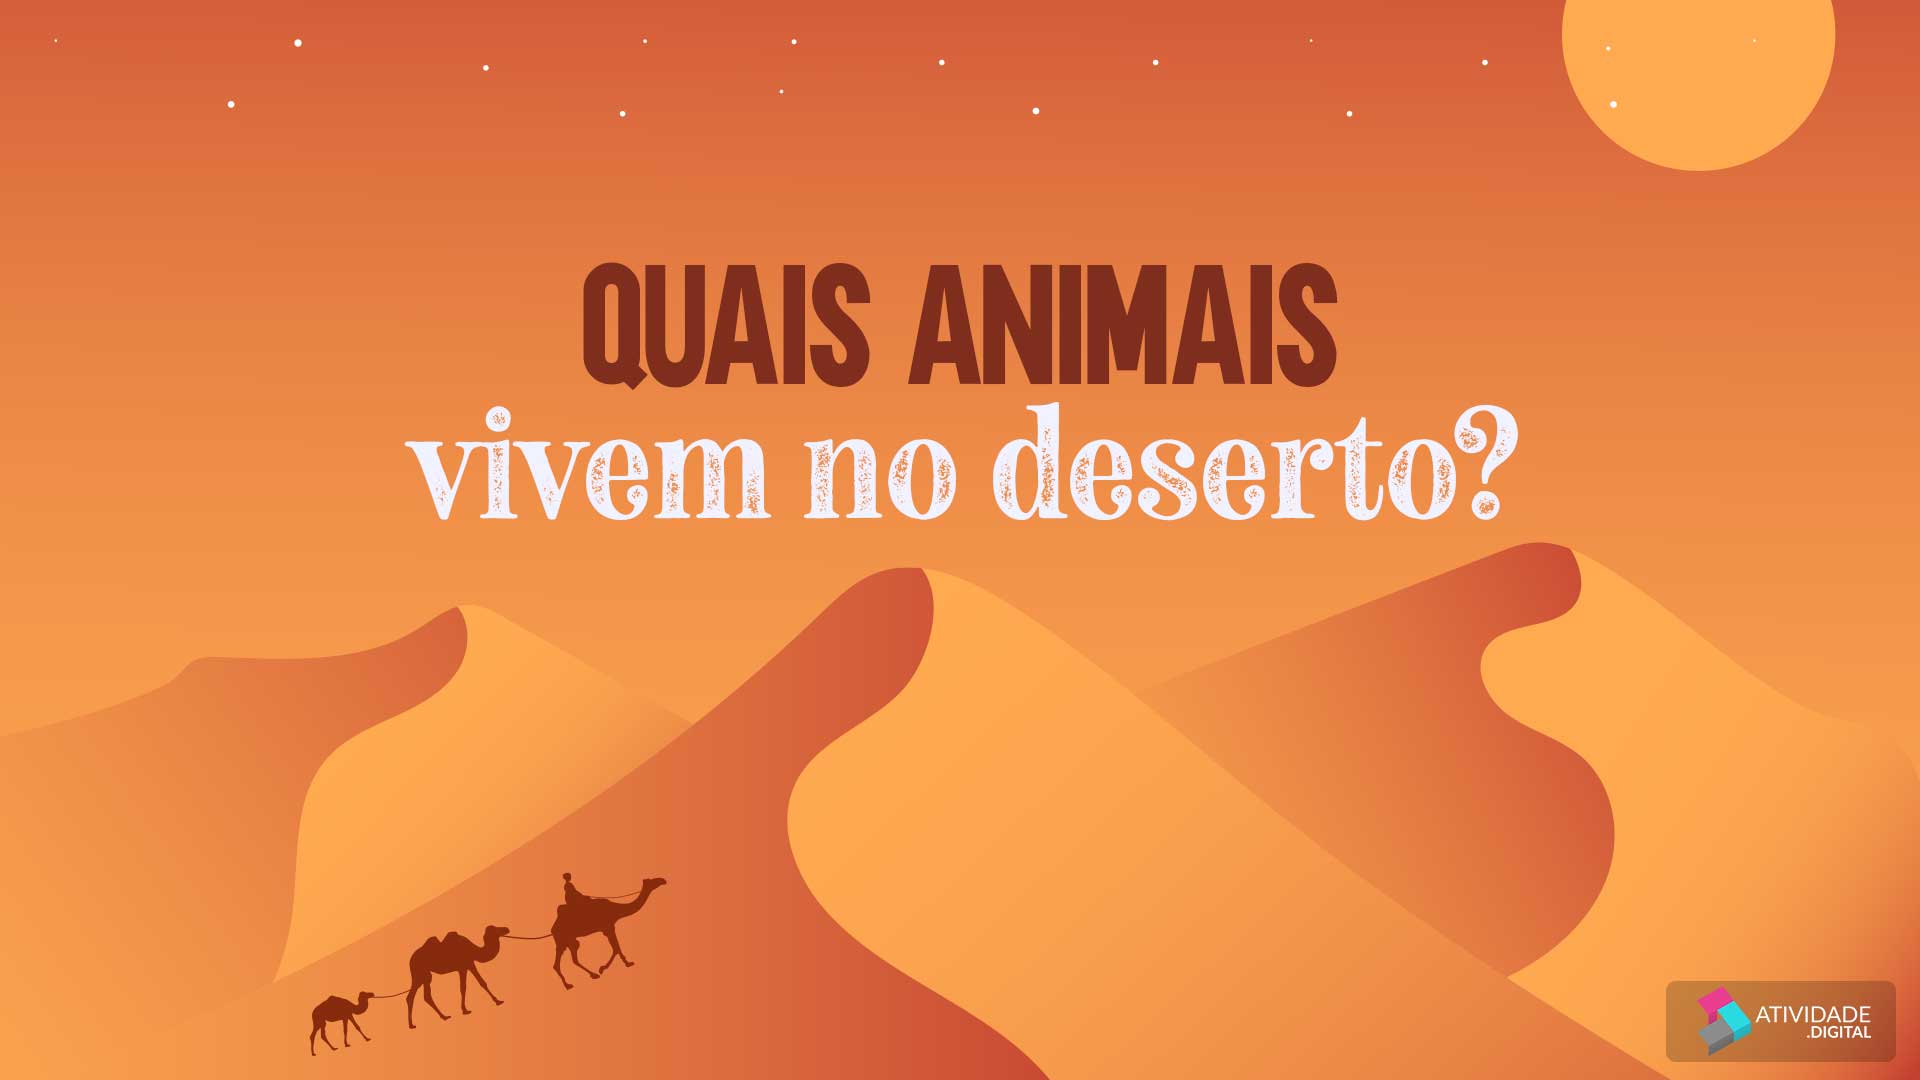 Quais animais vivem no deserto?